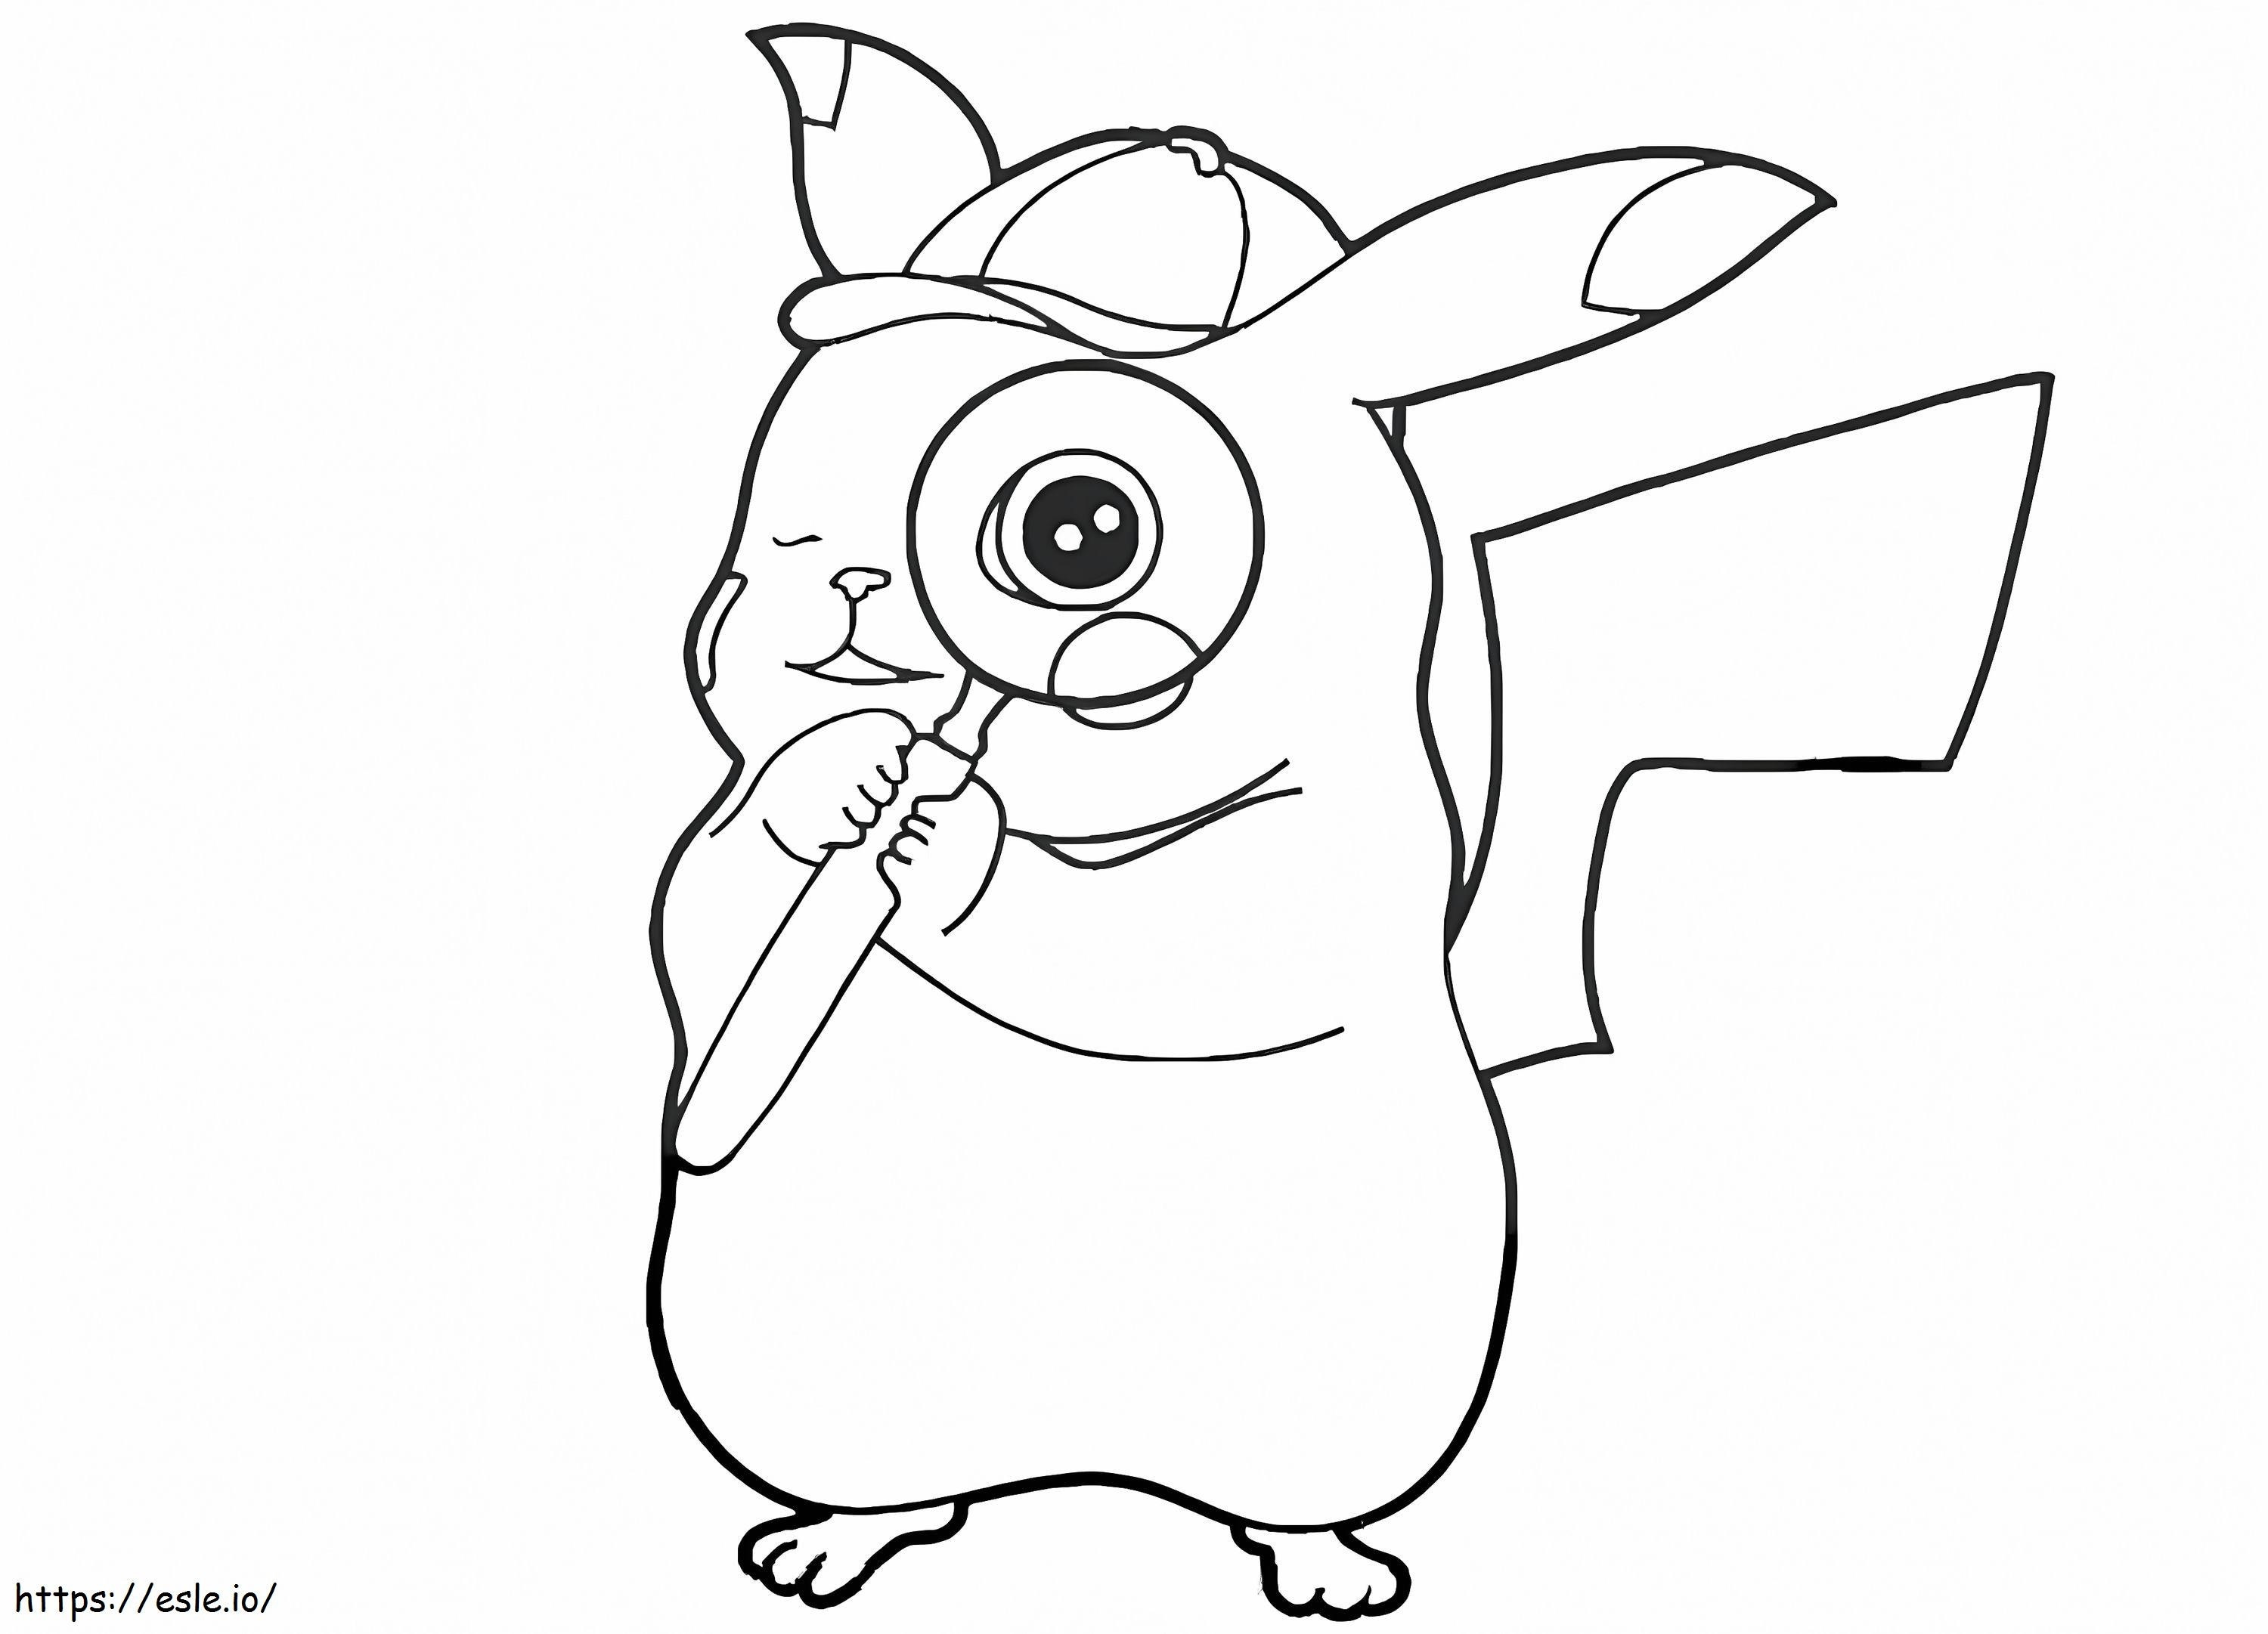 Coloriage Lindo Détective Pikachu à imprimer dessin